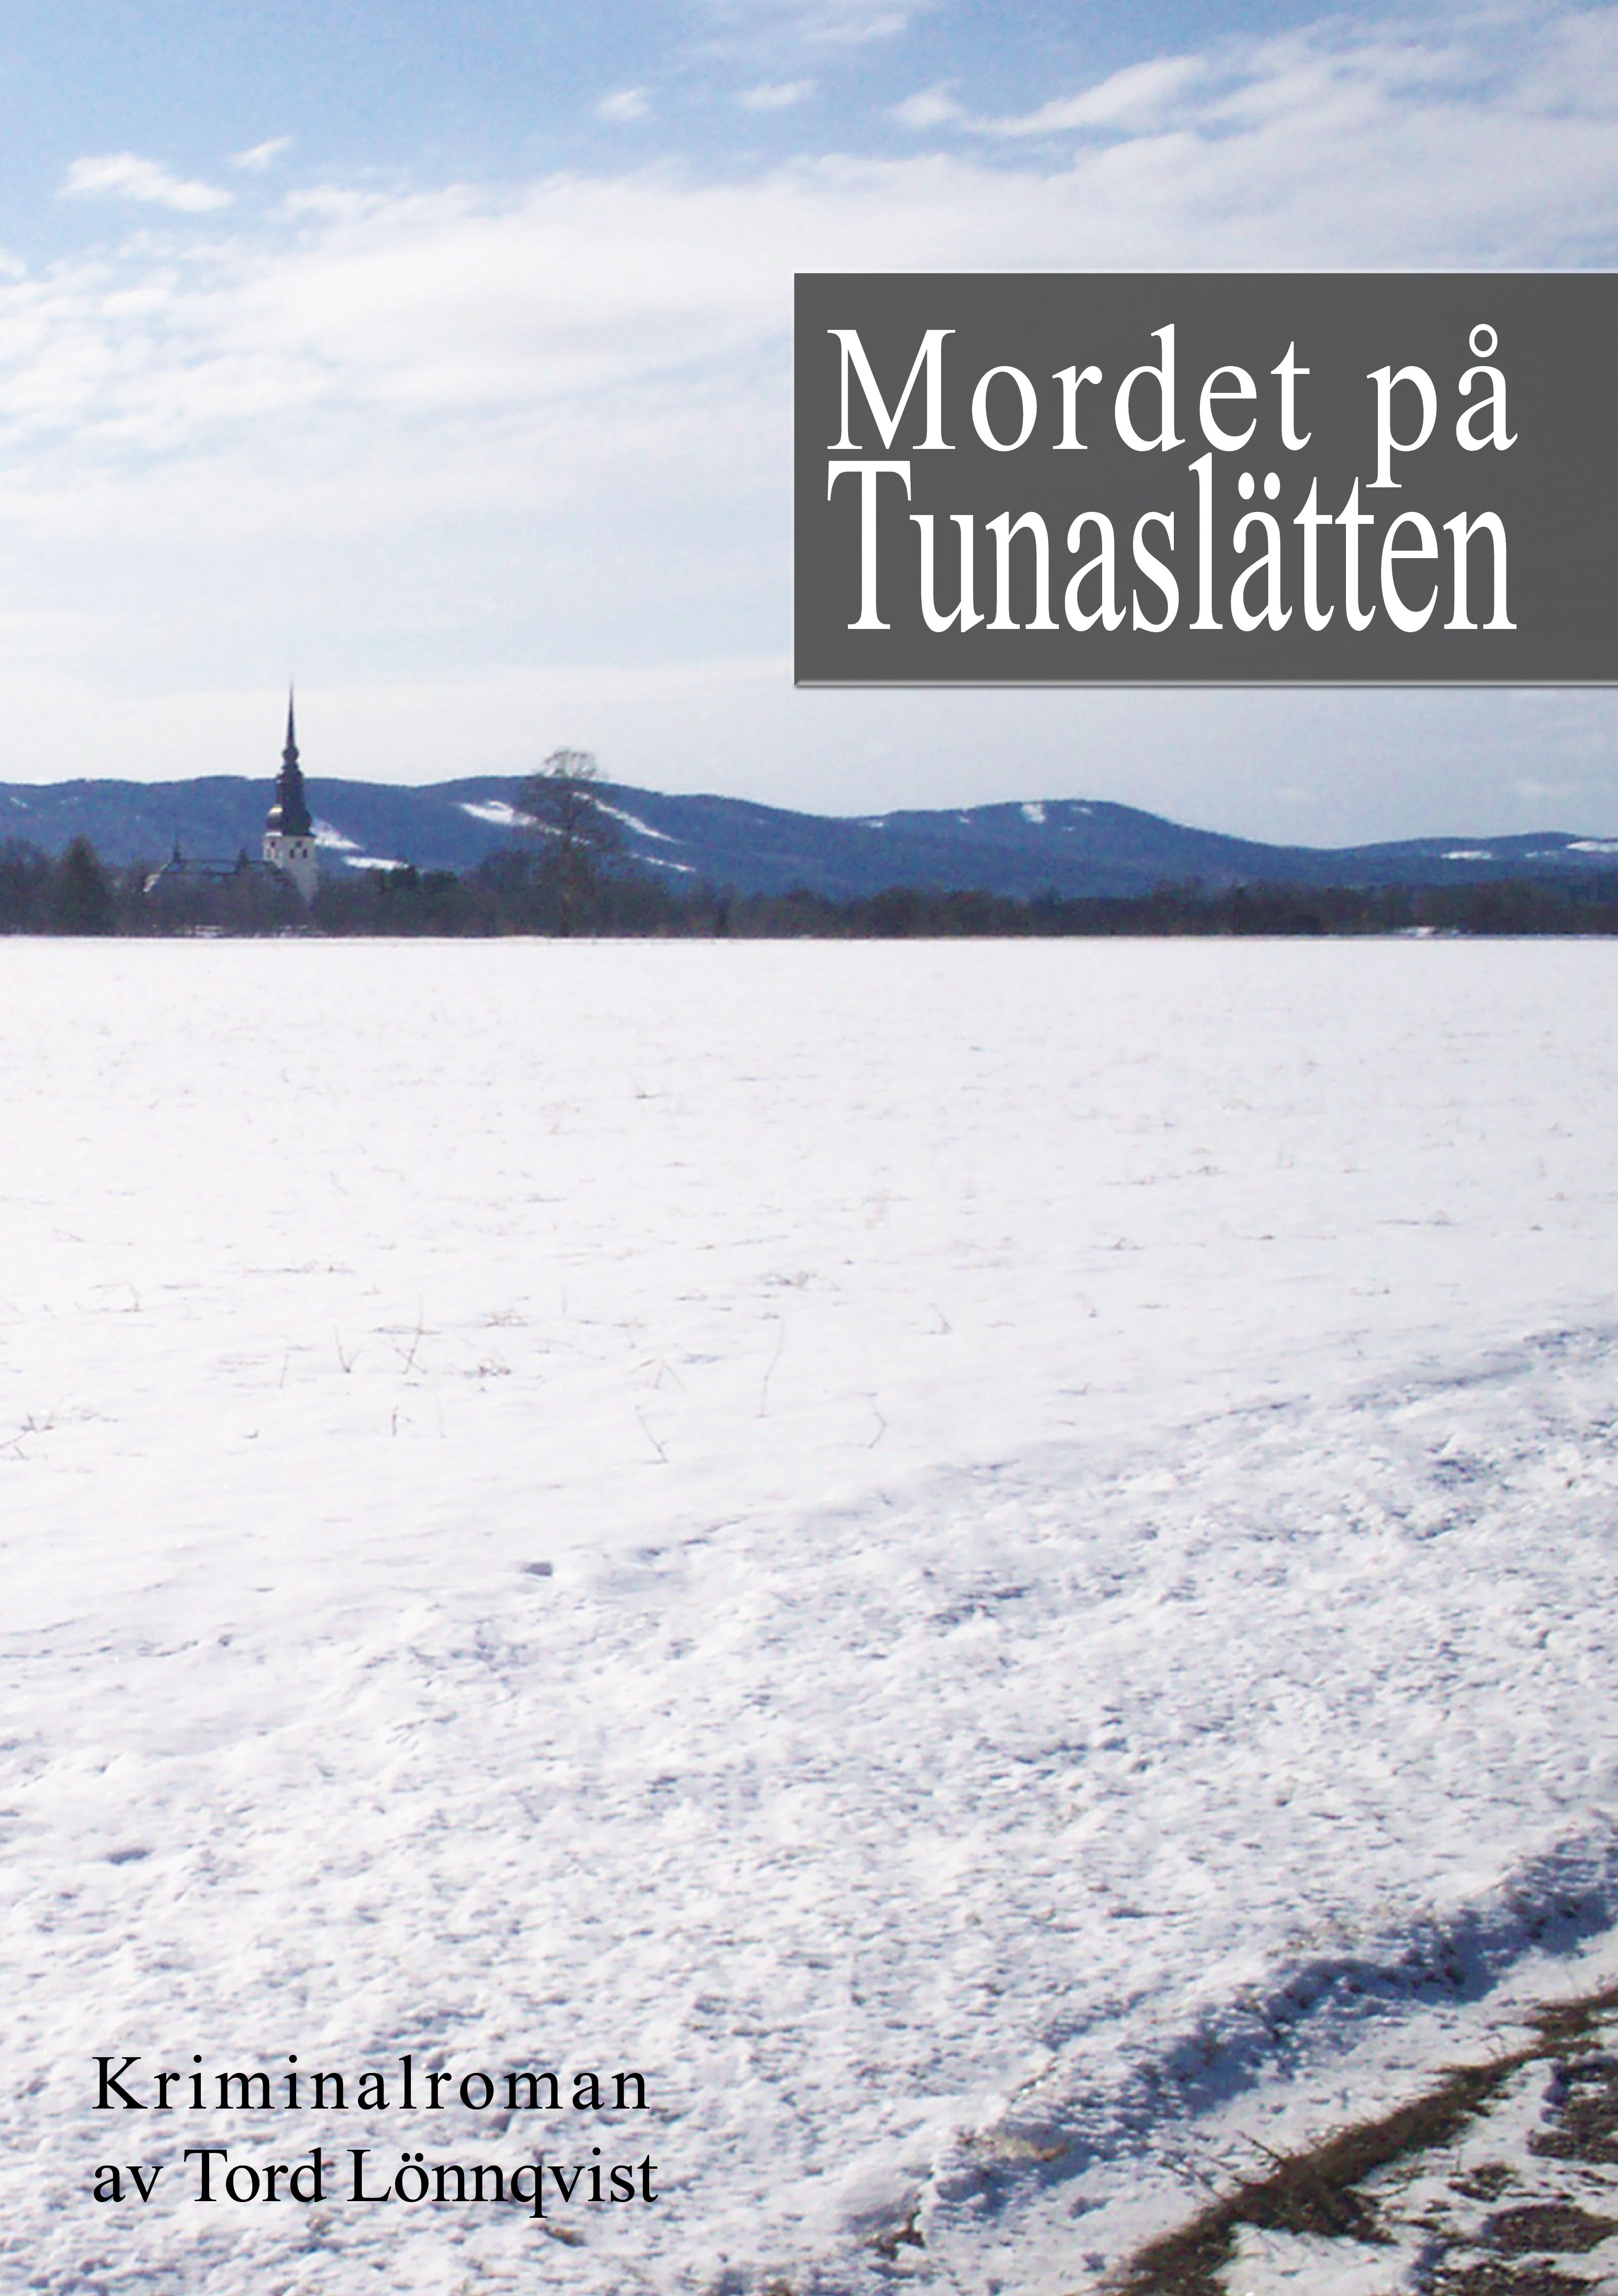 Mordet på Tunaslätten, eBook by Tord Lönnqvist